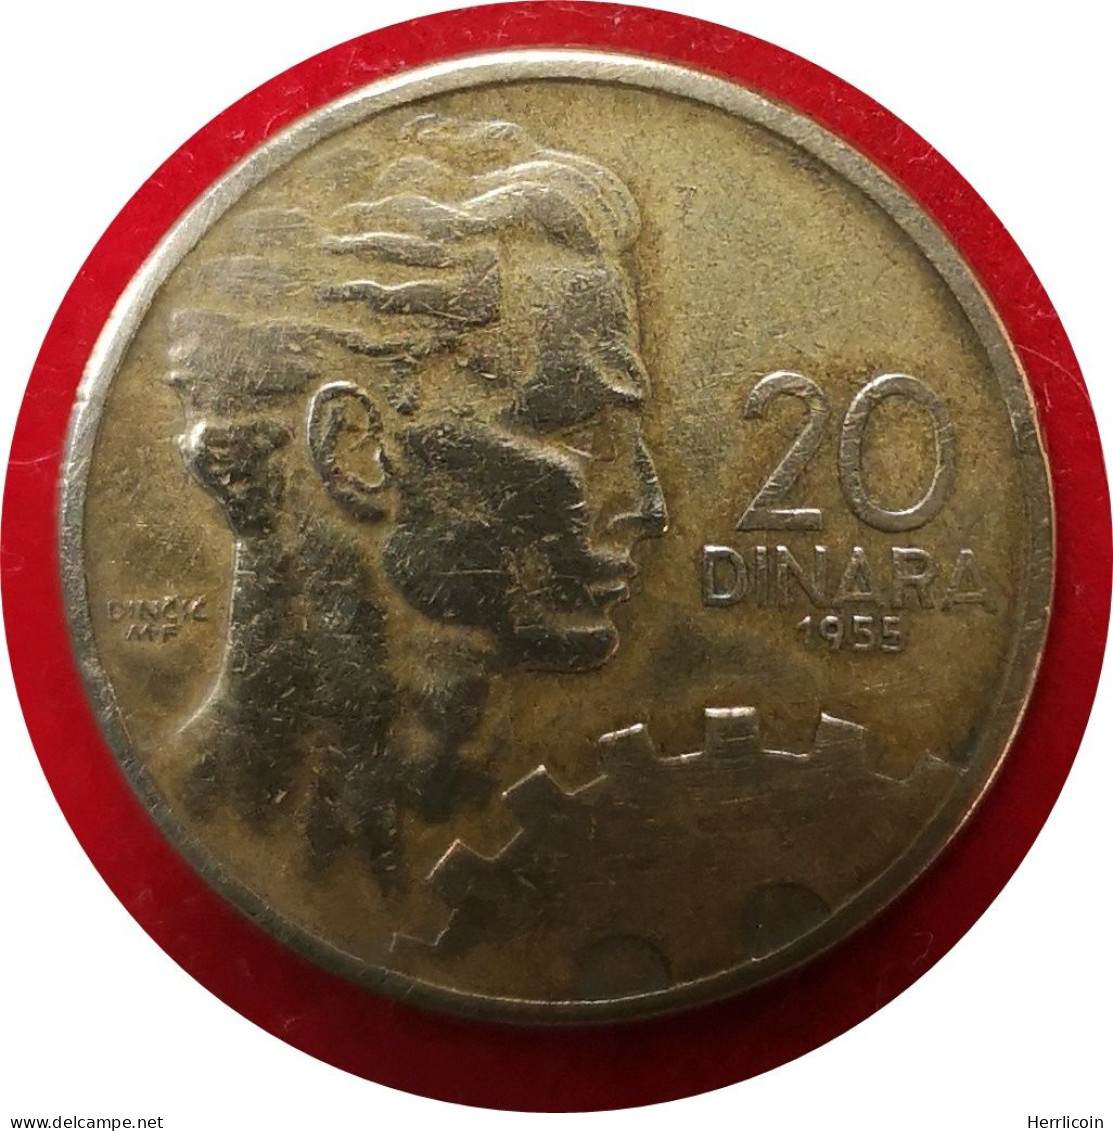 Monnaie Yougoslavie - 1955 - 20 Dinars - Yougoslavie